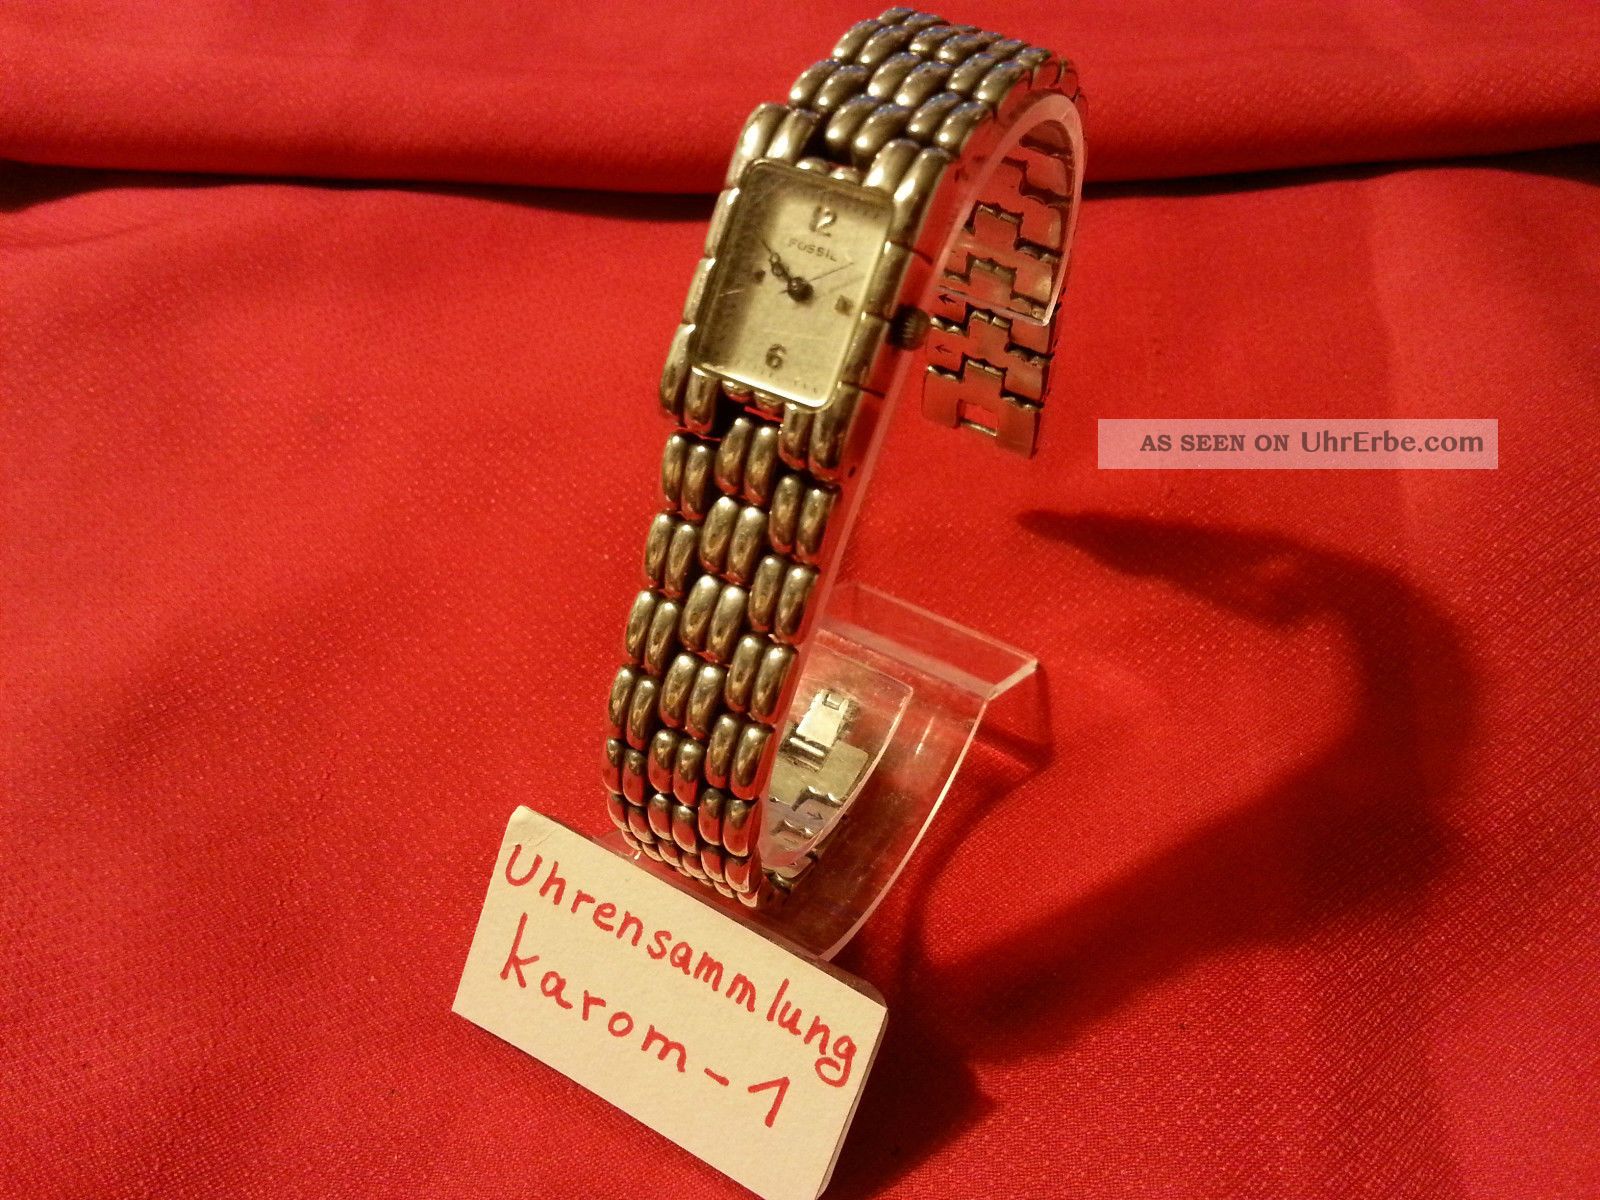 Fossil Damenuhr Vt - 2521 Stainless Steel Back 3atm Uhrensammlung Top Armbanduhren Bild